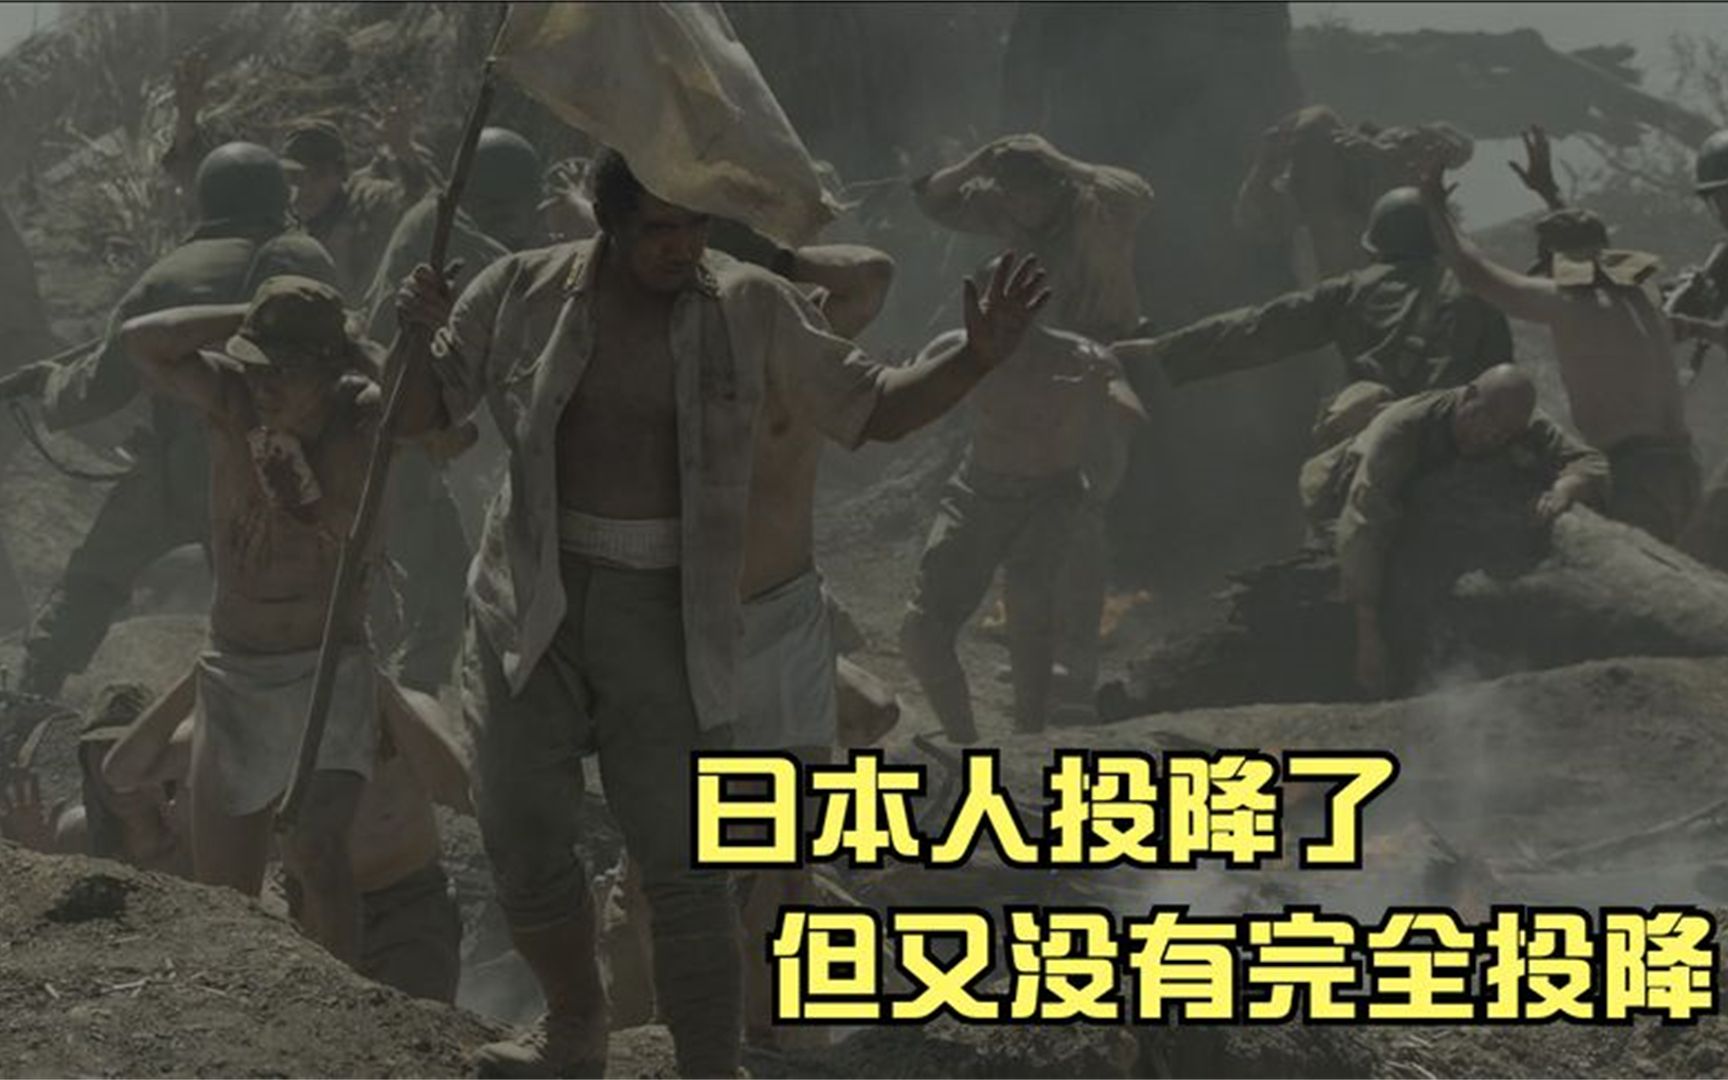 战争片:血战钢锯岭;日本人表面投降,背后却玩阴招!